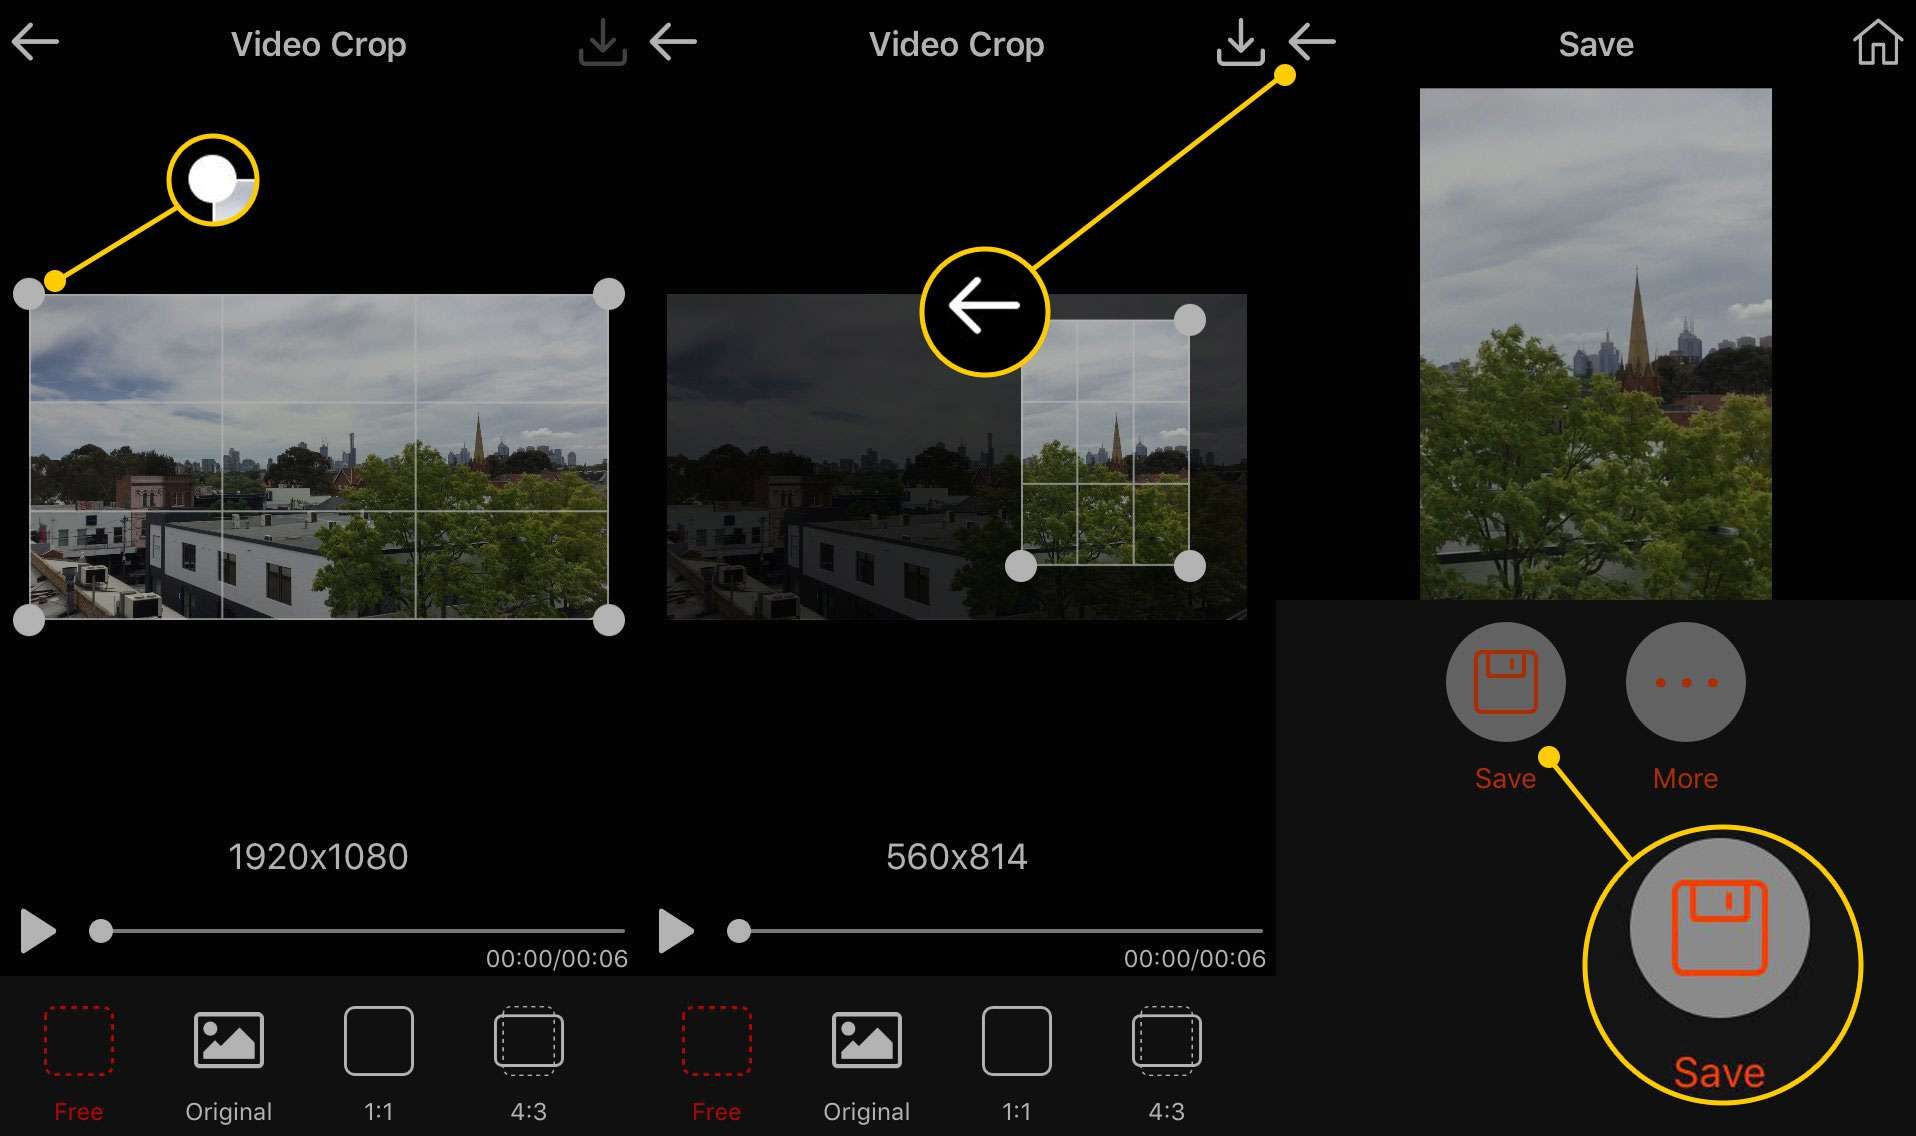 Обрезка и сохранение видео в Video Crop для iOS